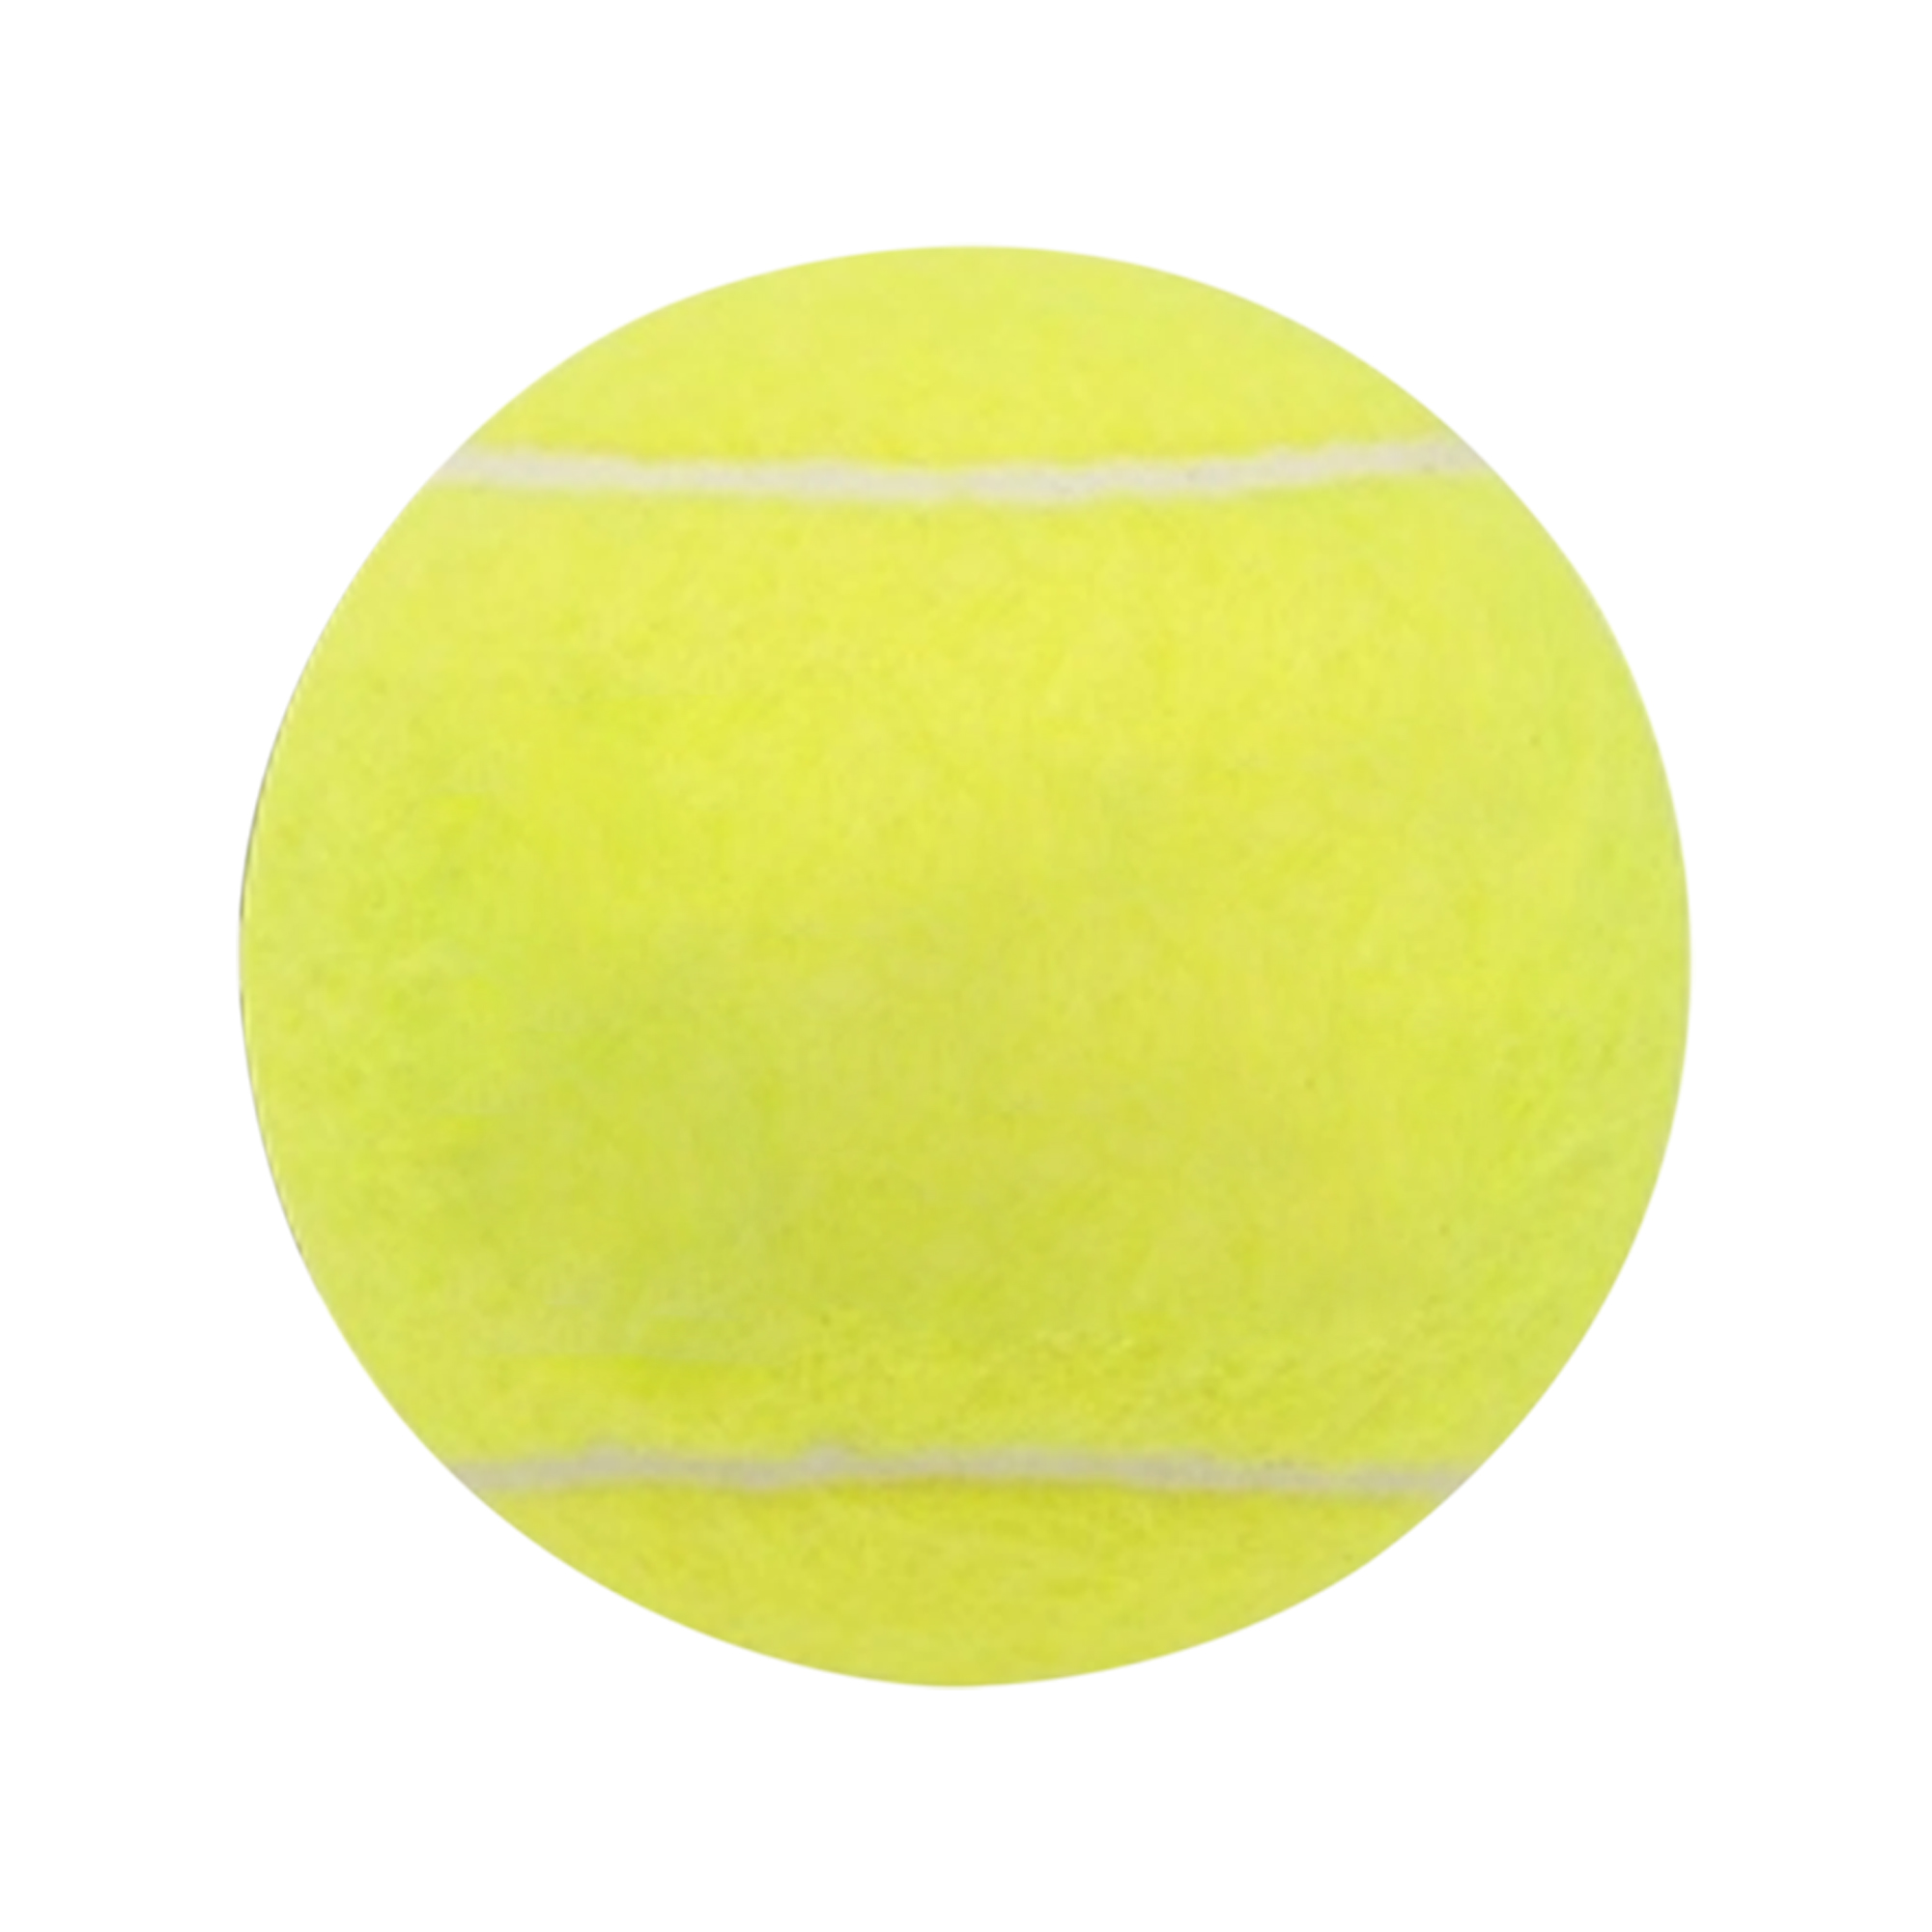 Pelotas De Tenis All Court Pack De 4 Dunlop